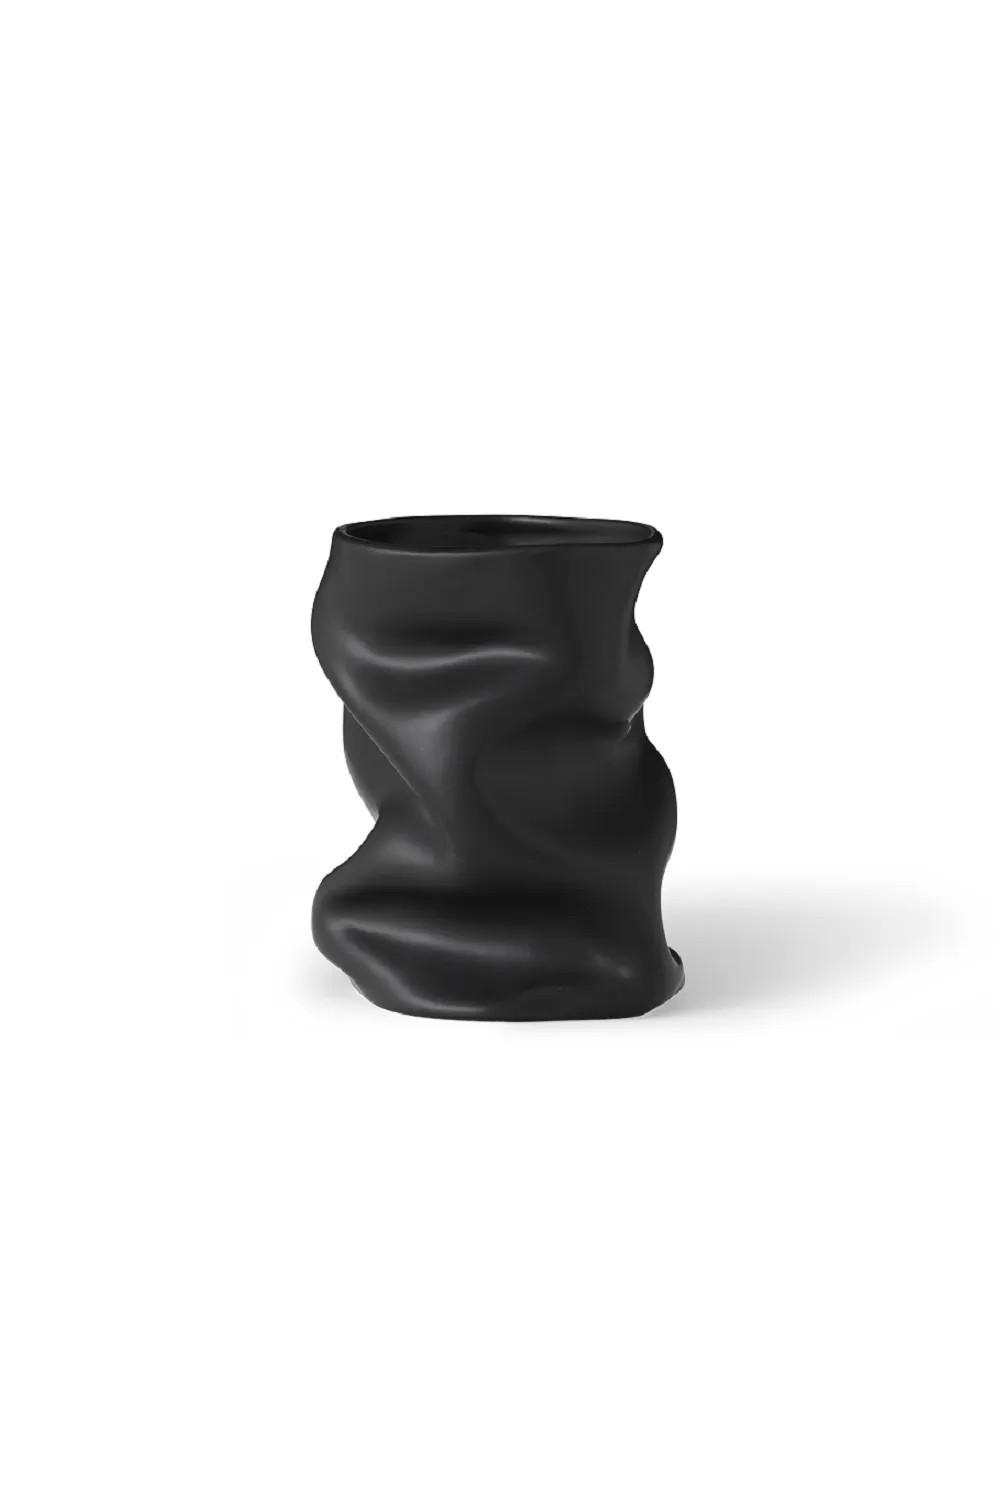 Ваза Collapse Vase h20 Black